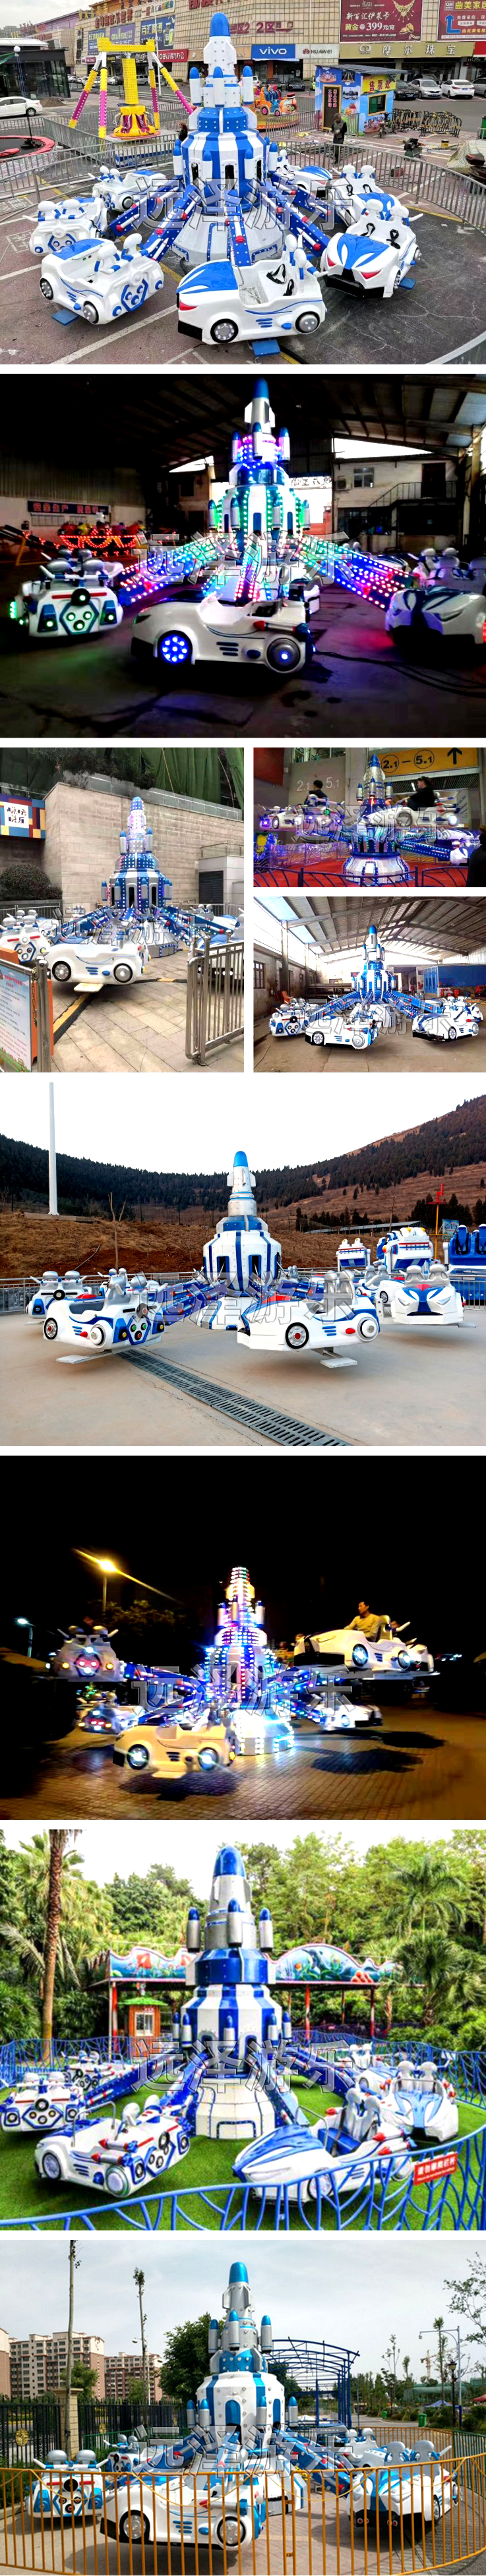 胶州自控飞车游乐设备 儿童旋转飞机游乐园 汽车自控飞机 7